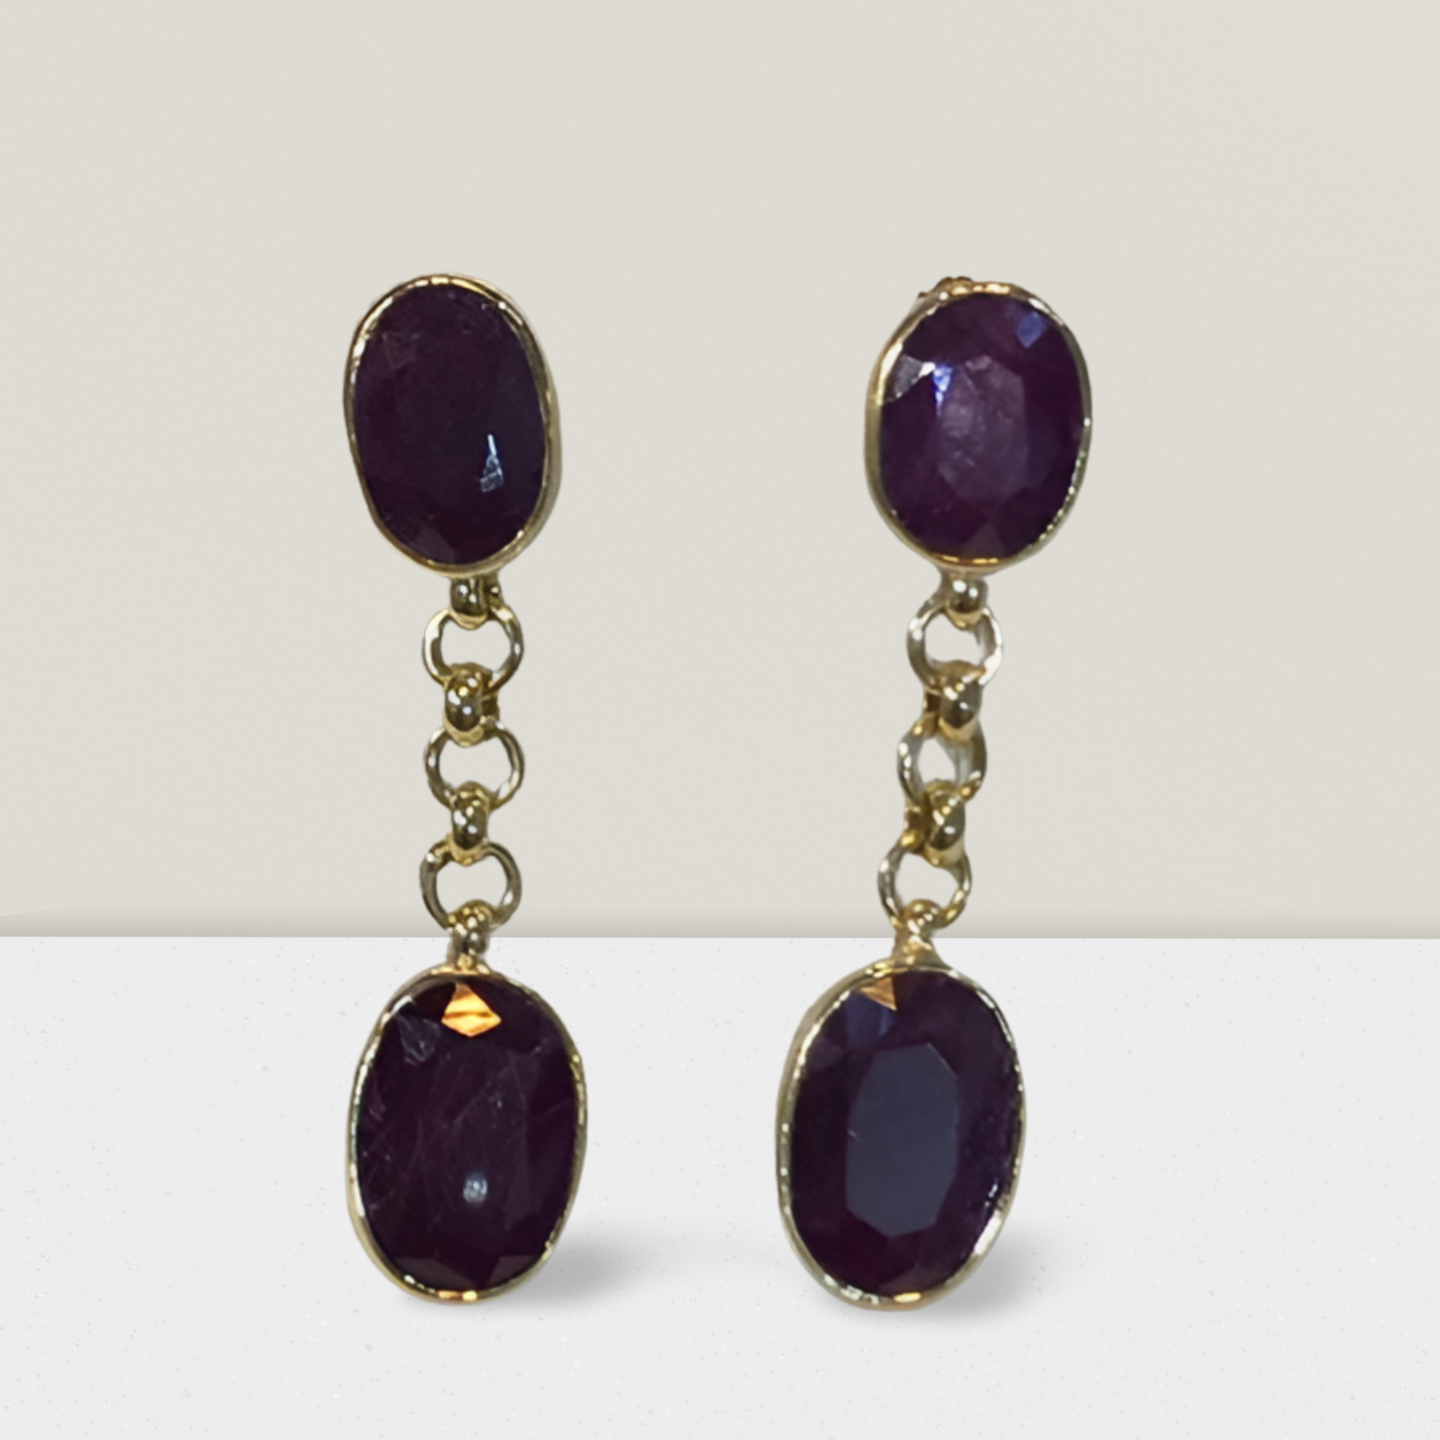 Ruby oval cabochon stones and 18k gold earrings, one of a kind, Fine earrings, Handmade earrings, Greek Jewelry